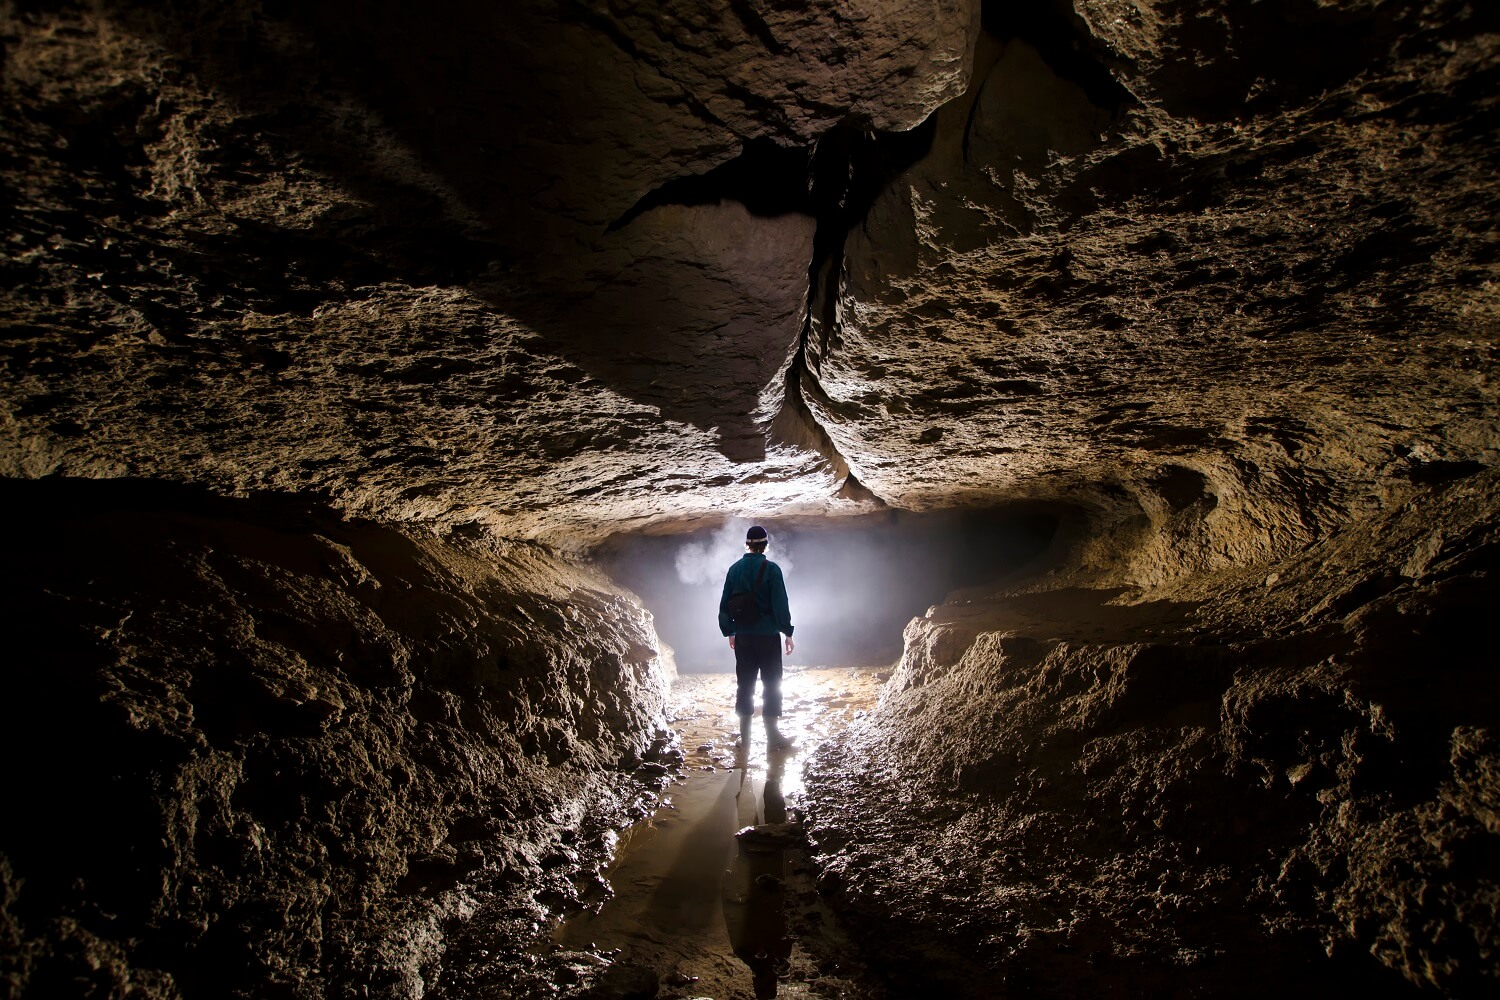 Um seine Heldenreise zu erfüllen, muss der Held die tiefste Höhle durchschreiten.